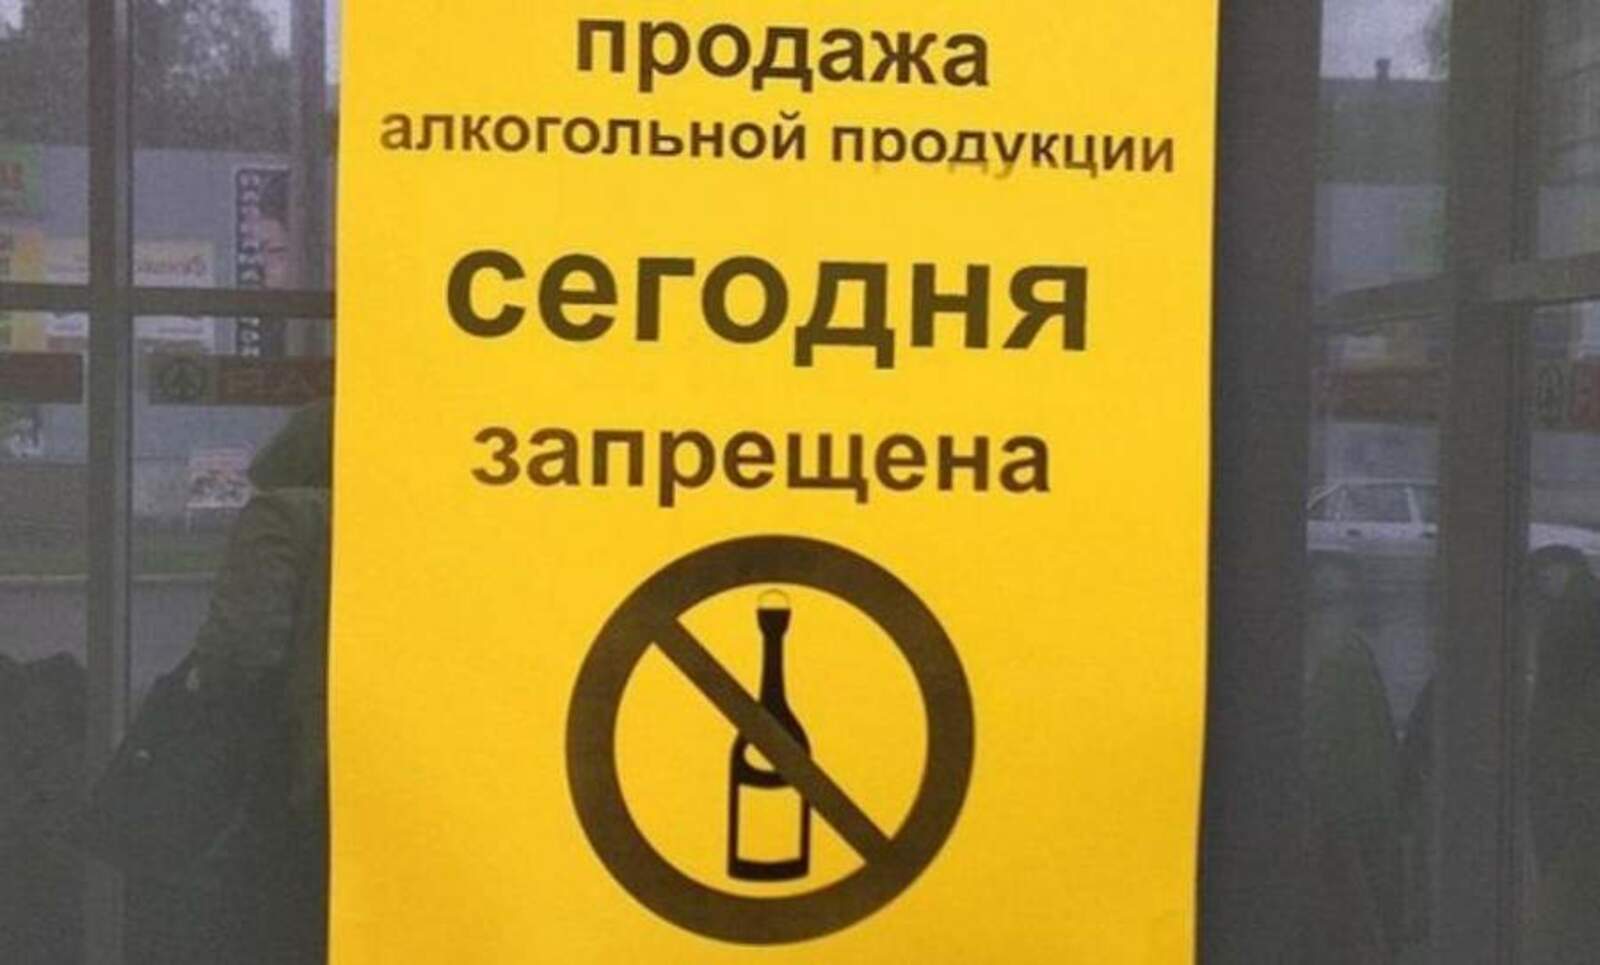 Реализация запрещена ограничена. Продажа алкогольной продукции запрещена. Объявление о запрете торговли алкоголем. Алкогольная продукция запрещ. Продажа запрещена.